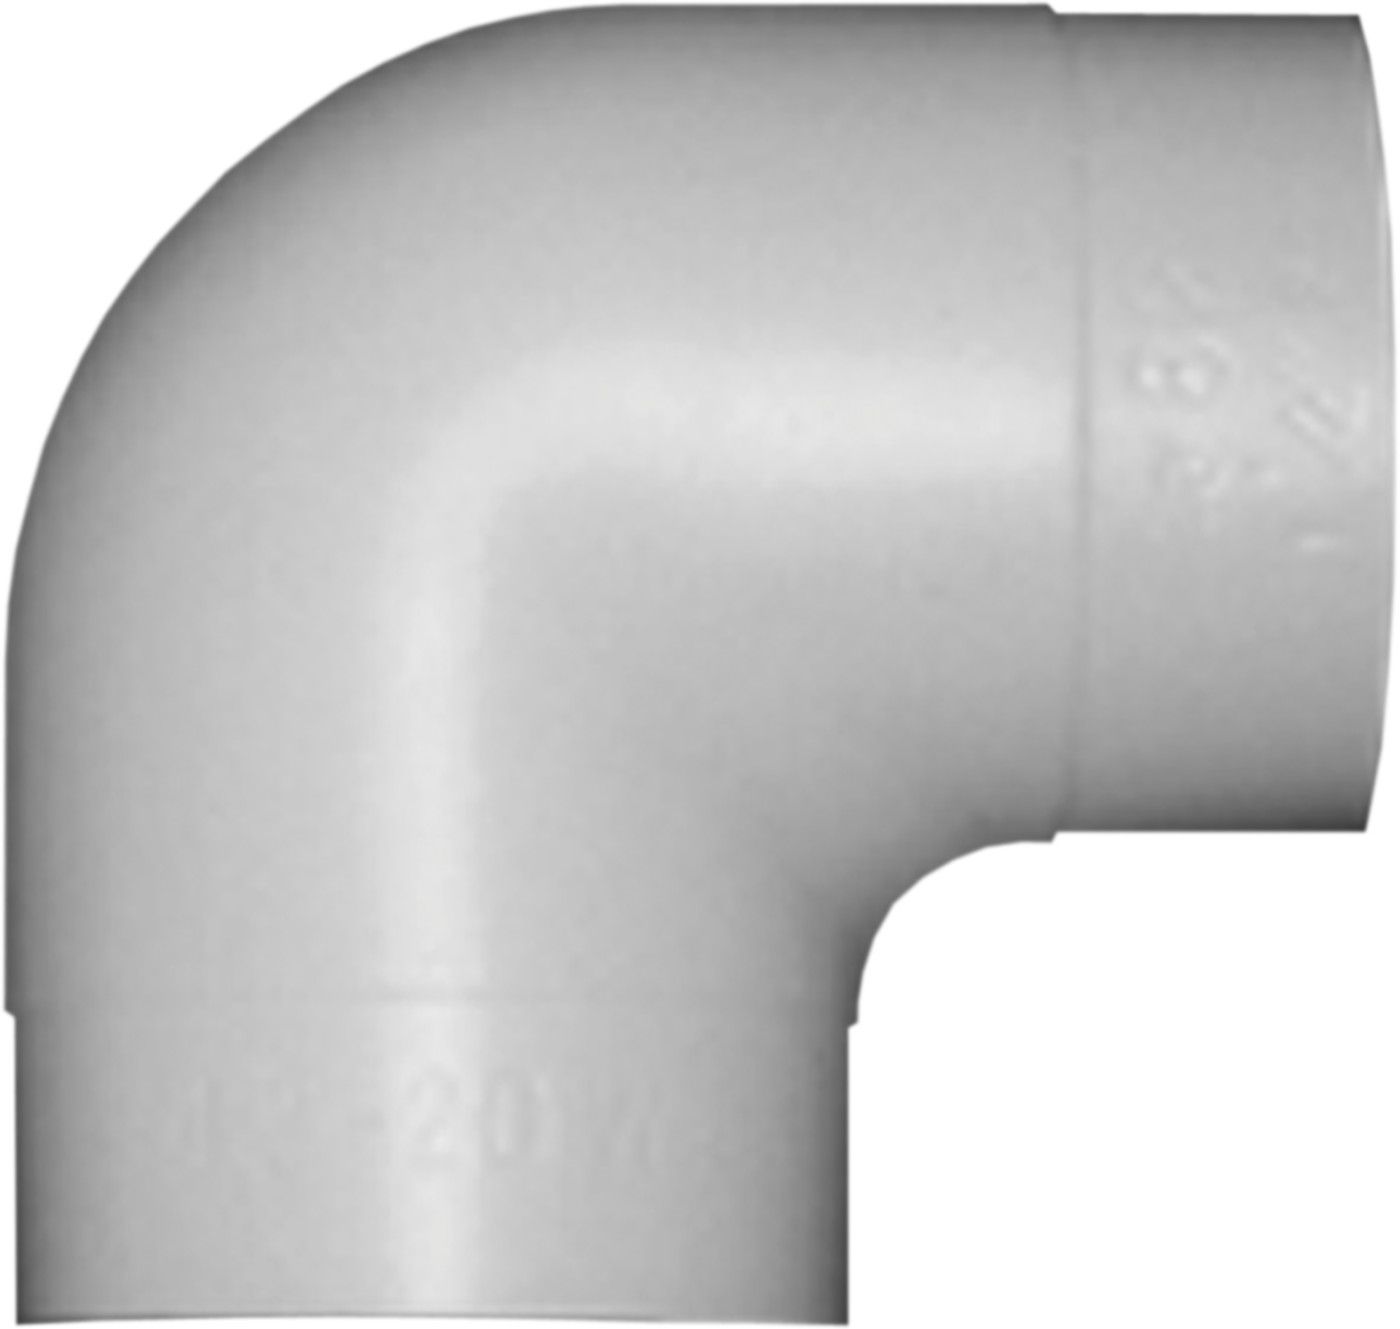 PVC-Bogen 90° W 30 mm d 89 mm (für 48-50, 27-60) - PVC-Folie